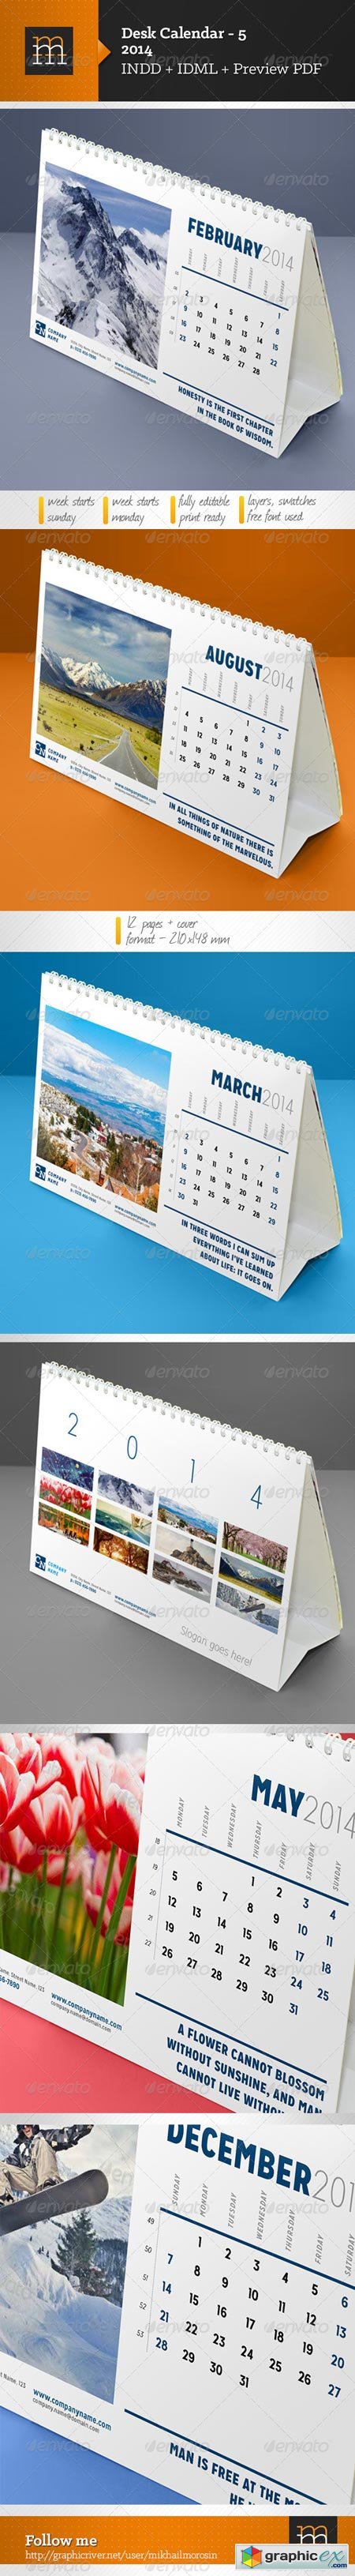 Desk Calendar-5 2014 6402761